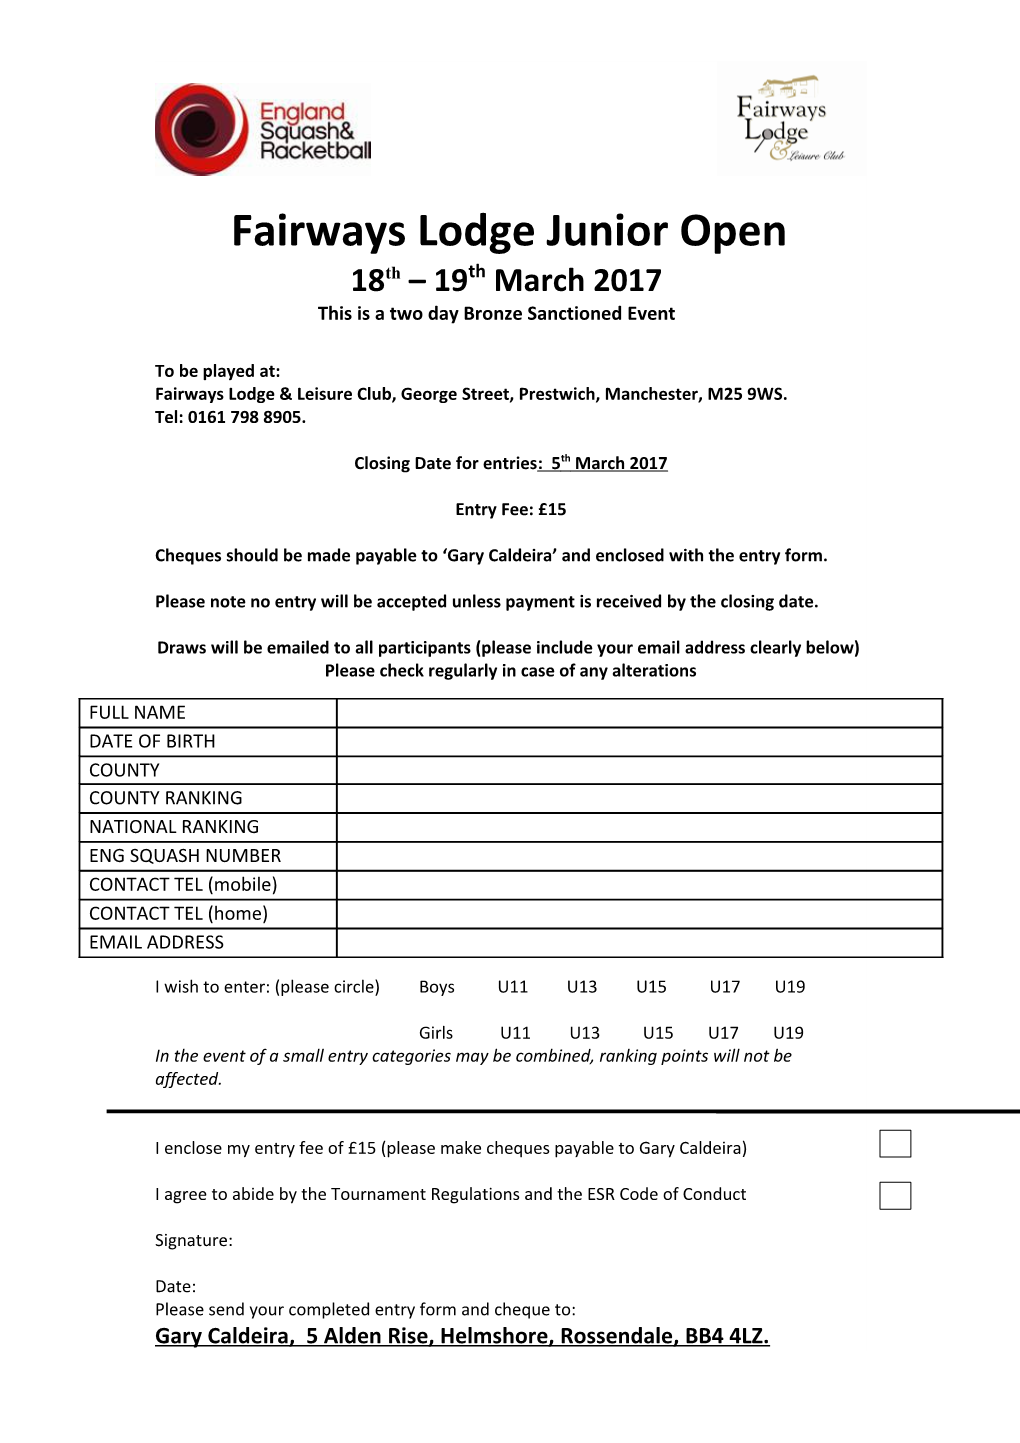 Fairways Lodge & Leisure Club,George Street, Prestwich, Manchester, M25 9WS